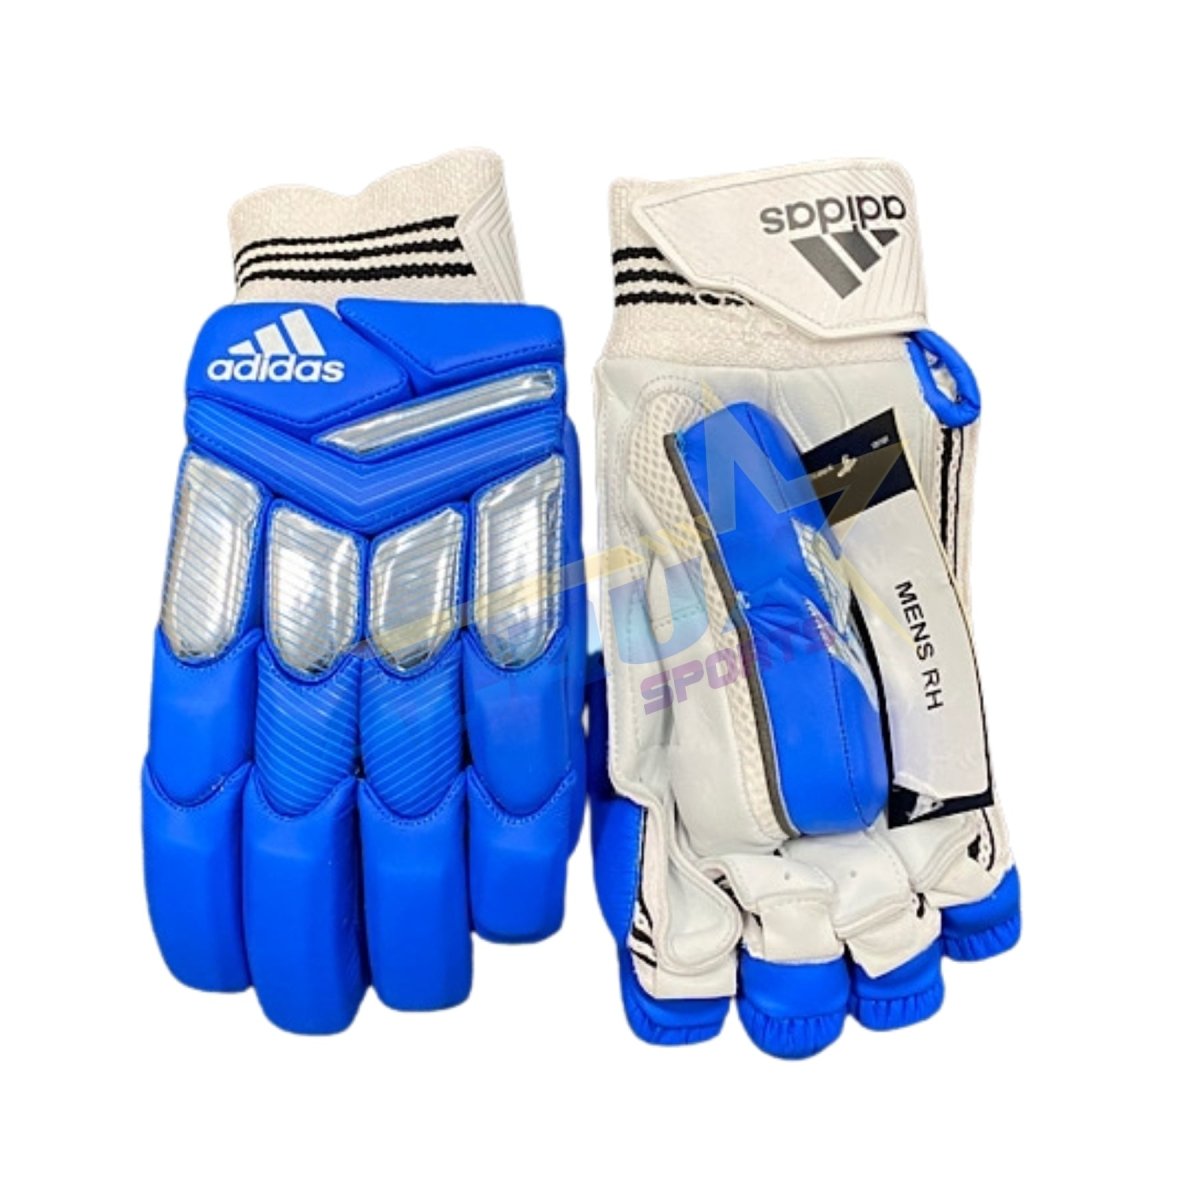 Adidas XT LE Coloured Cricket Batting Gloves